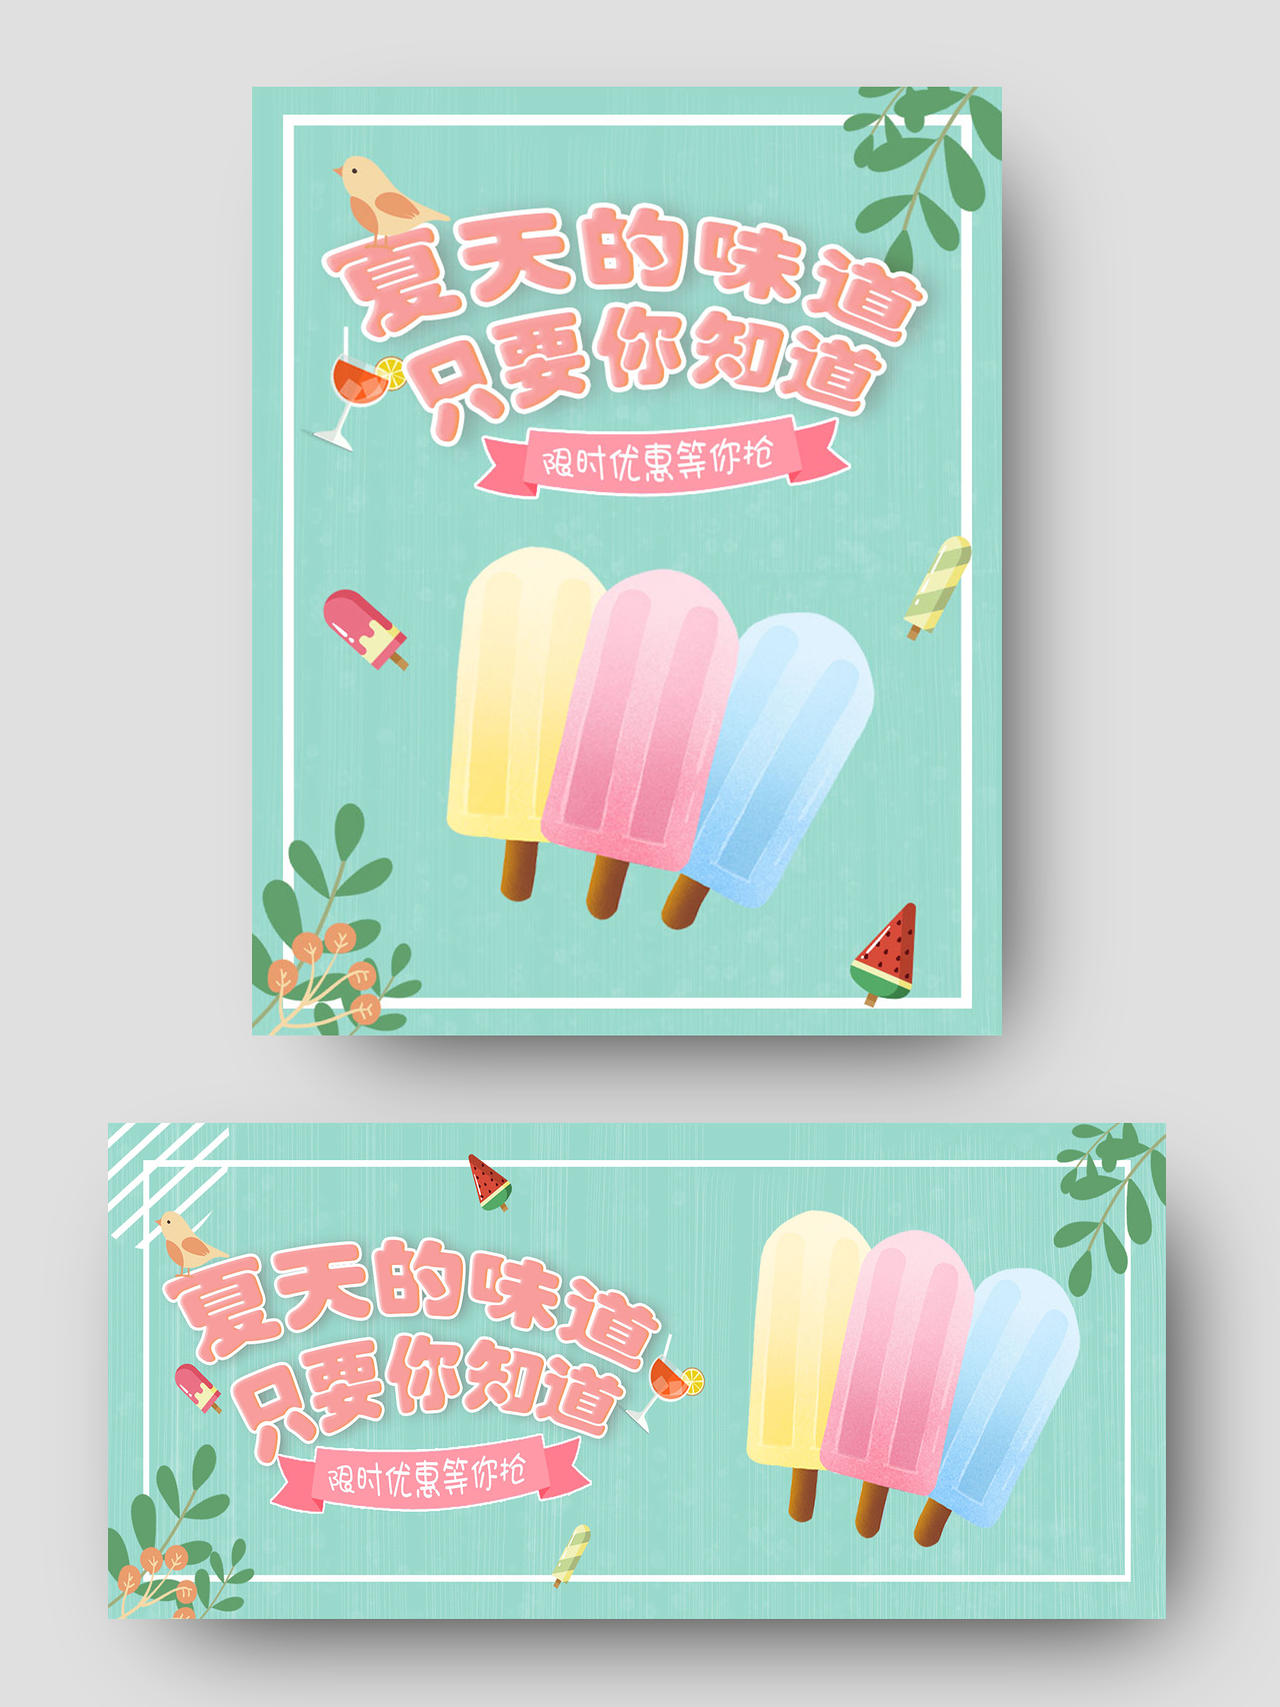 粉色清新简约风格狂暑季冰淇淋冰棍促销店铺banner海报电商水果